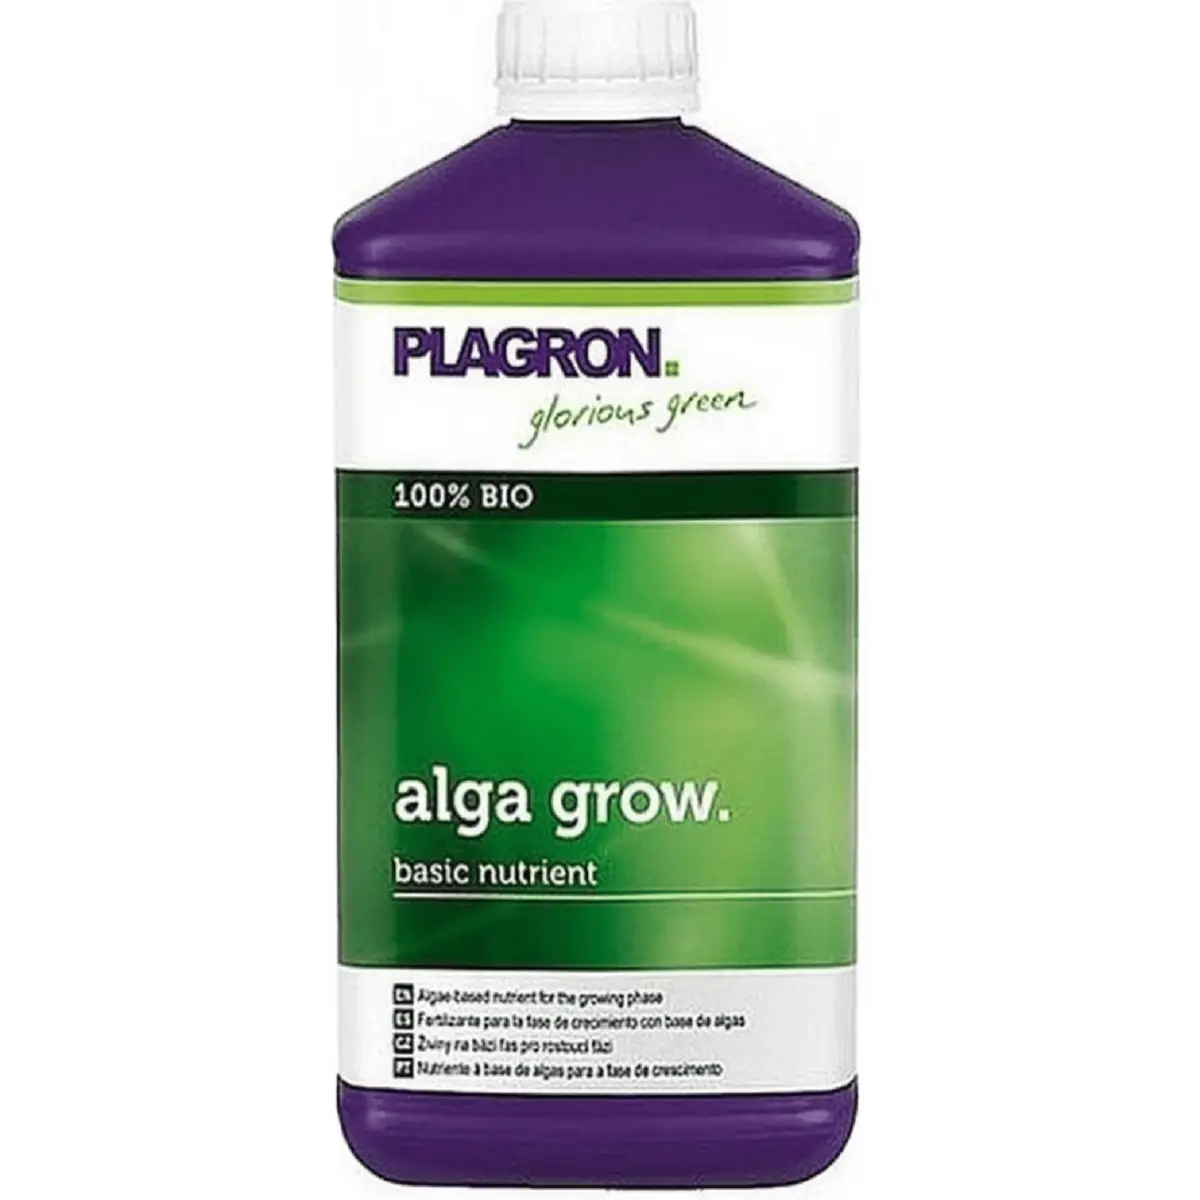 L'engrais de croissance plagron alga grow 1L